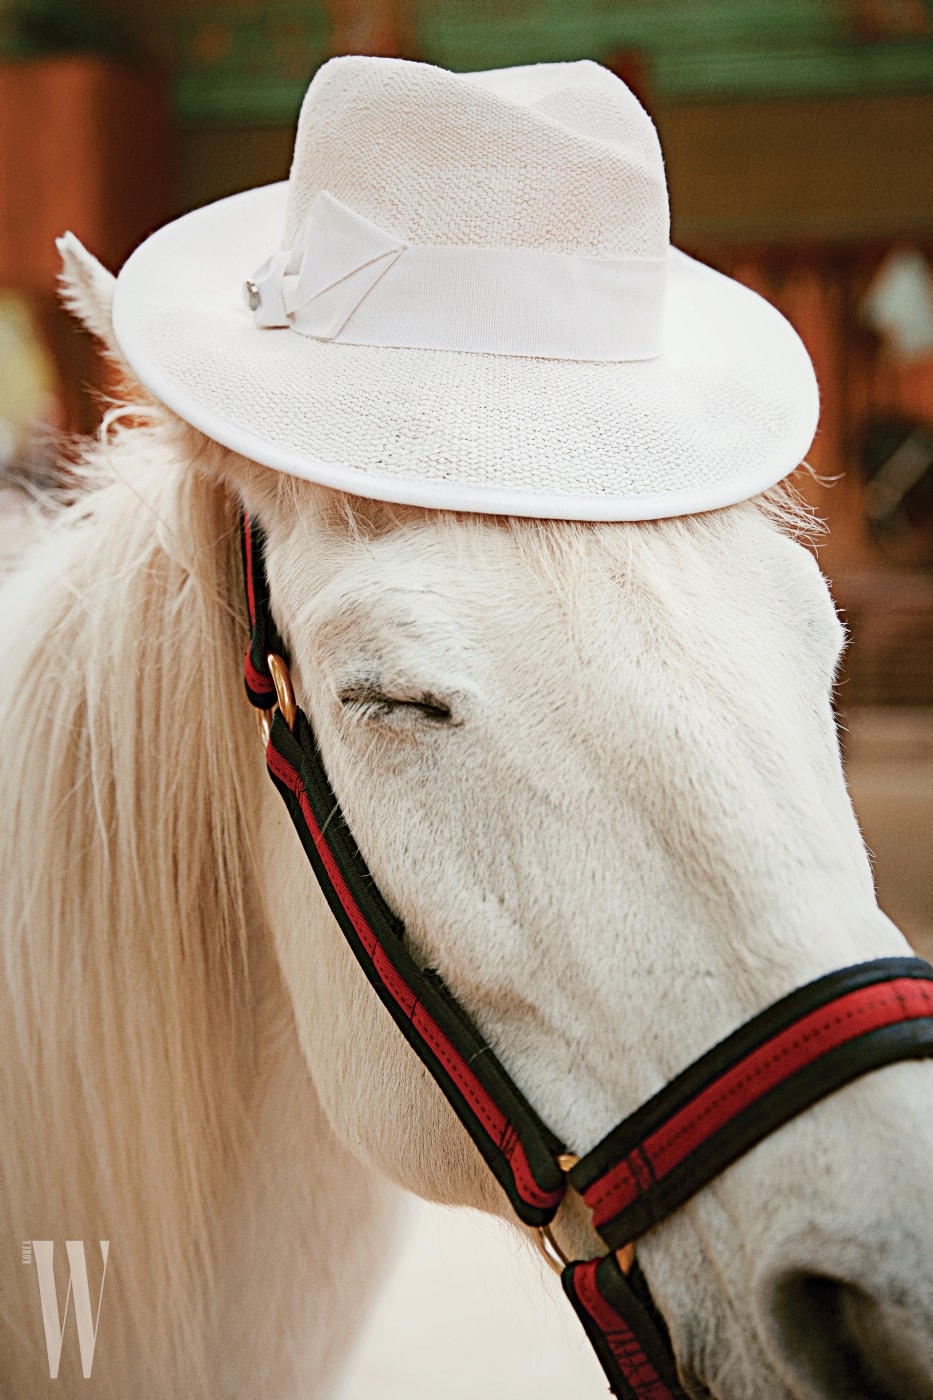 백마가 쓴 흰색 라피아 모자는 아르마니 꼴레지오니 제품. 35만원.